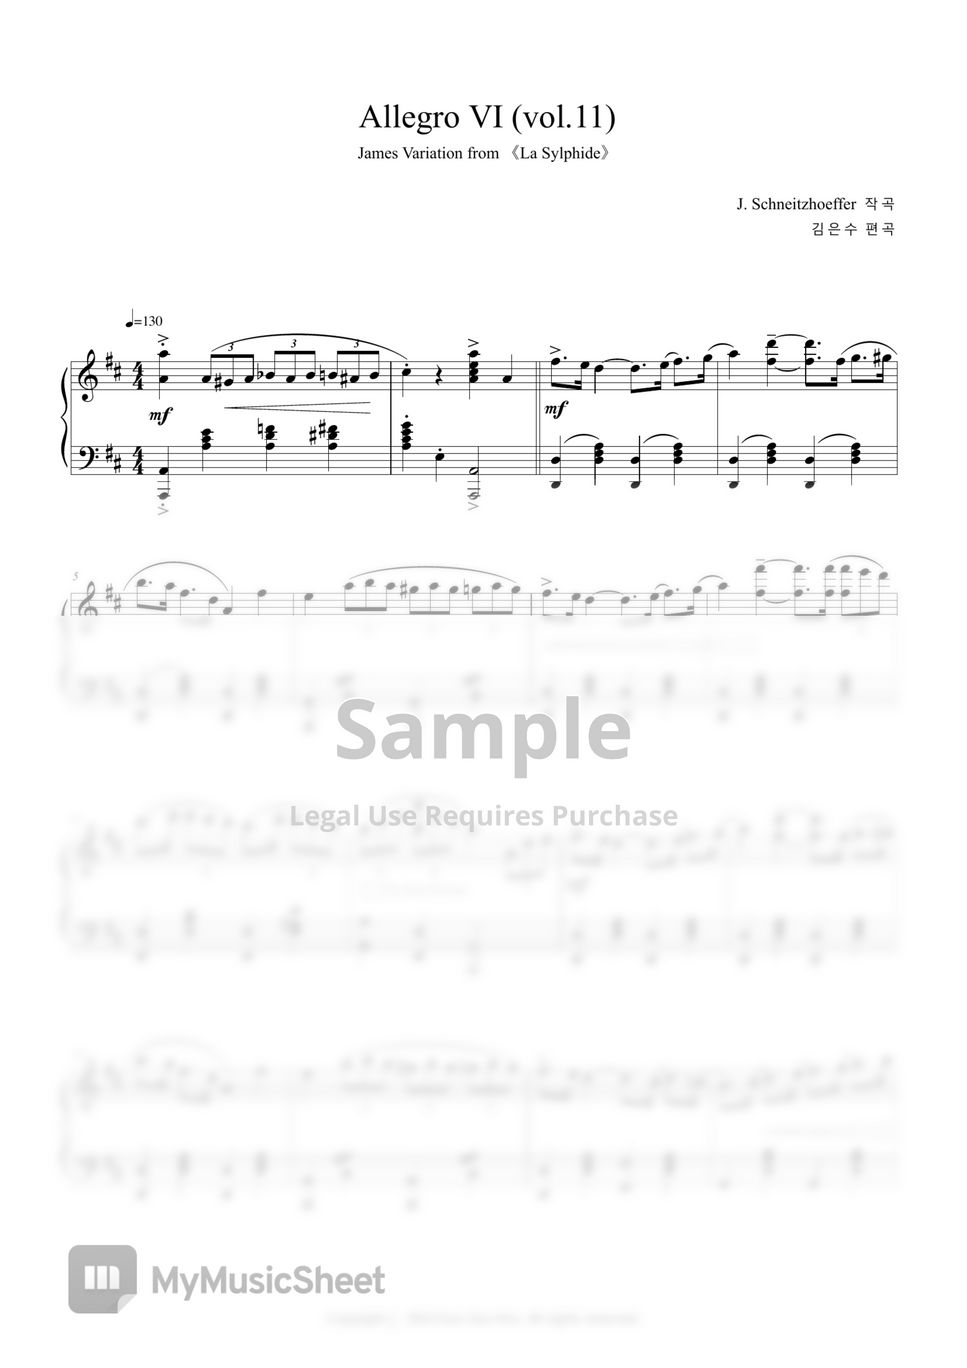 J. Schneitzhoeffer - Allegro Ⅵ (vol.11).pdf by Eun Soo Kim